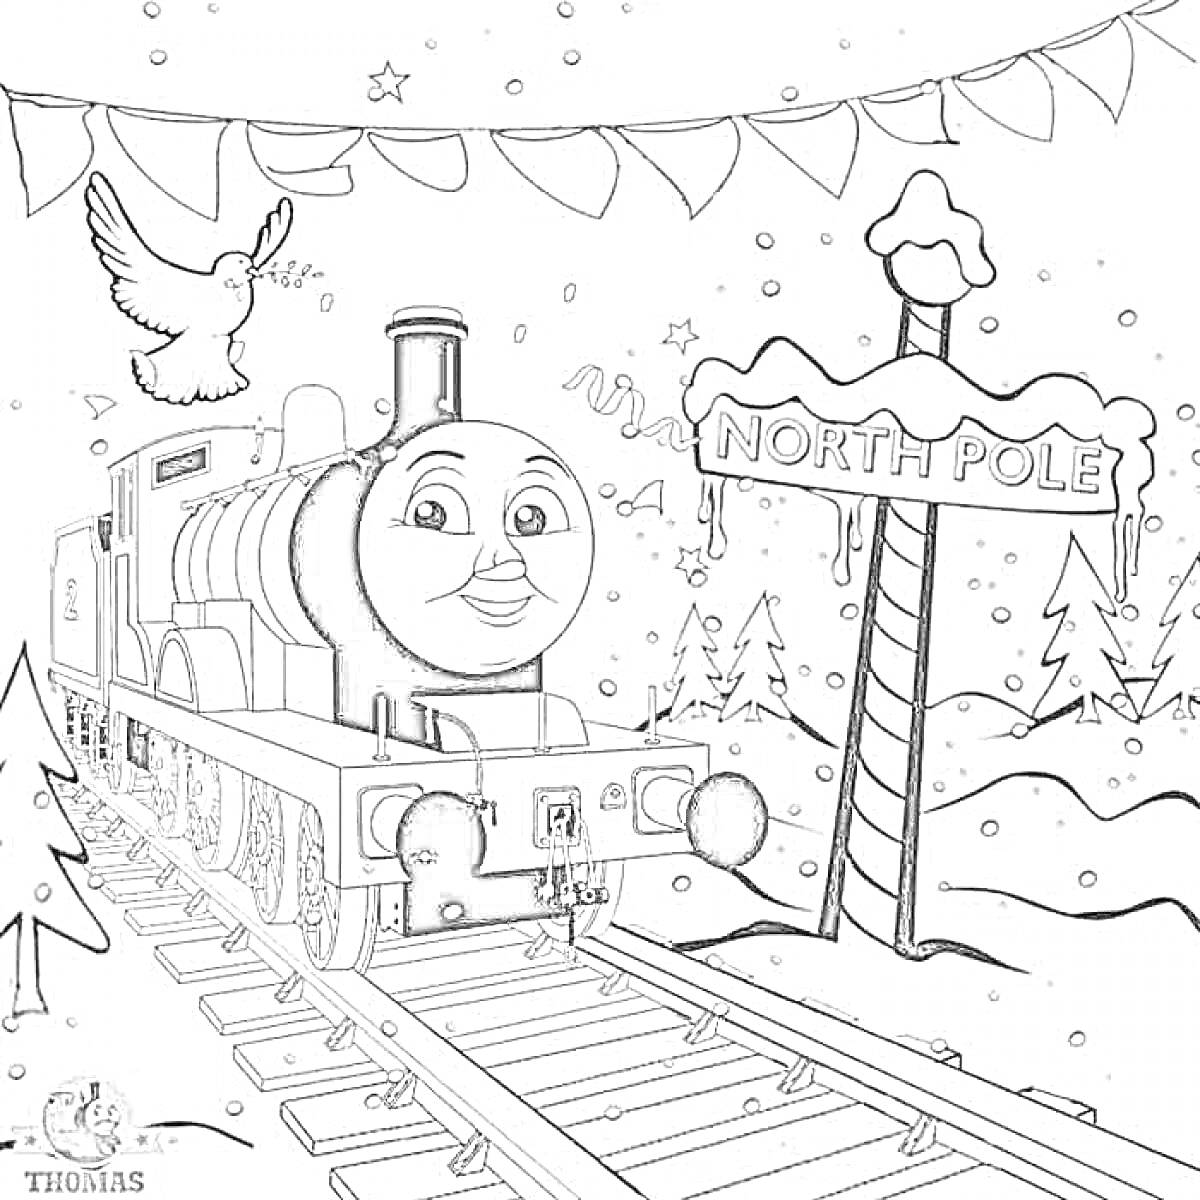 Раскраска Паровозик Чарли едет на Северный Полюс, сопровождаемый летящей голубкой; железная дорога идет через зимний лес, украшенный гирляндой